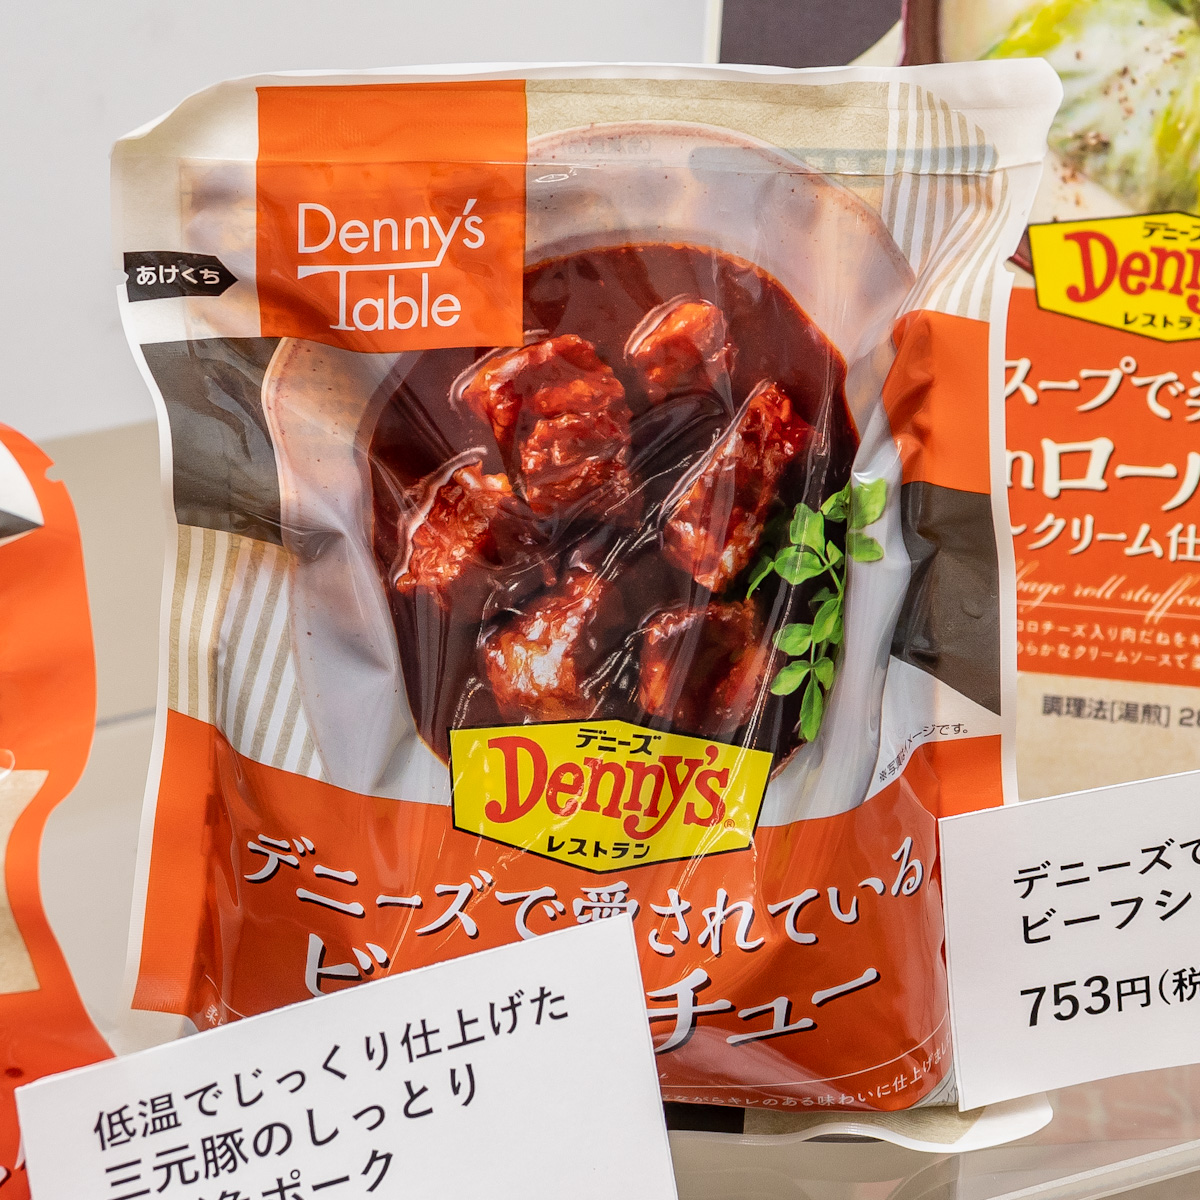 冷凍食品ブランド「Denny’s Table(デニーズテーブル)」デニーズで愛されているビーフシチュー3